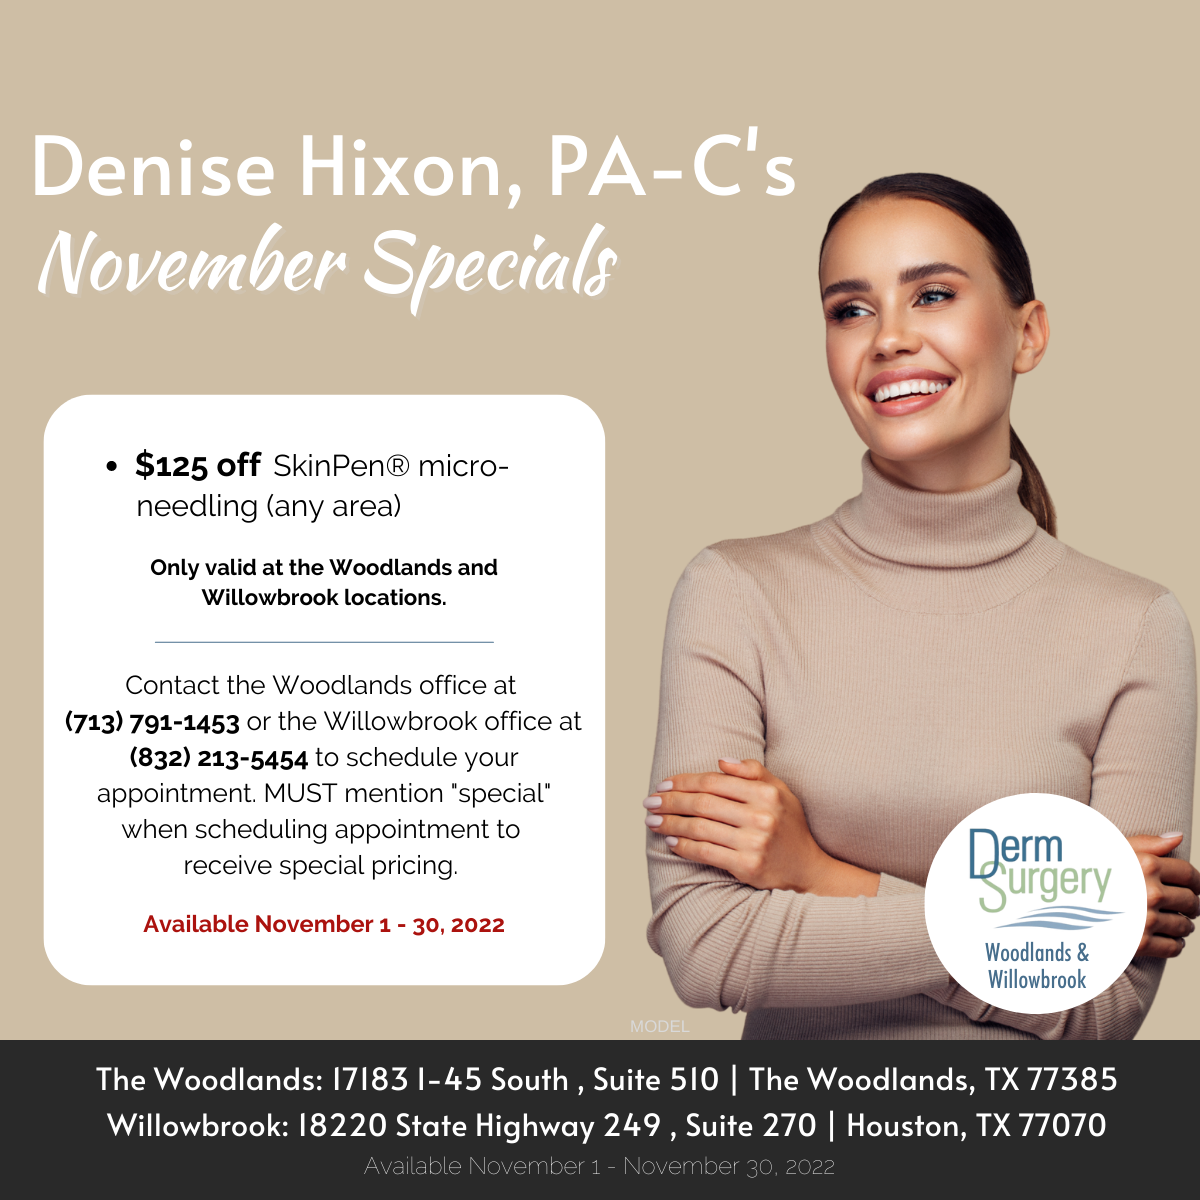 Denise Hixon, PA-C's November Specials 2022